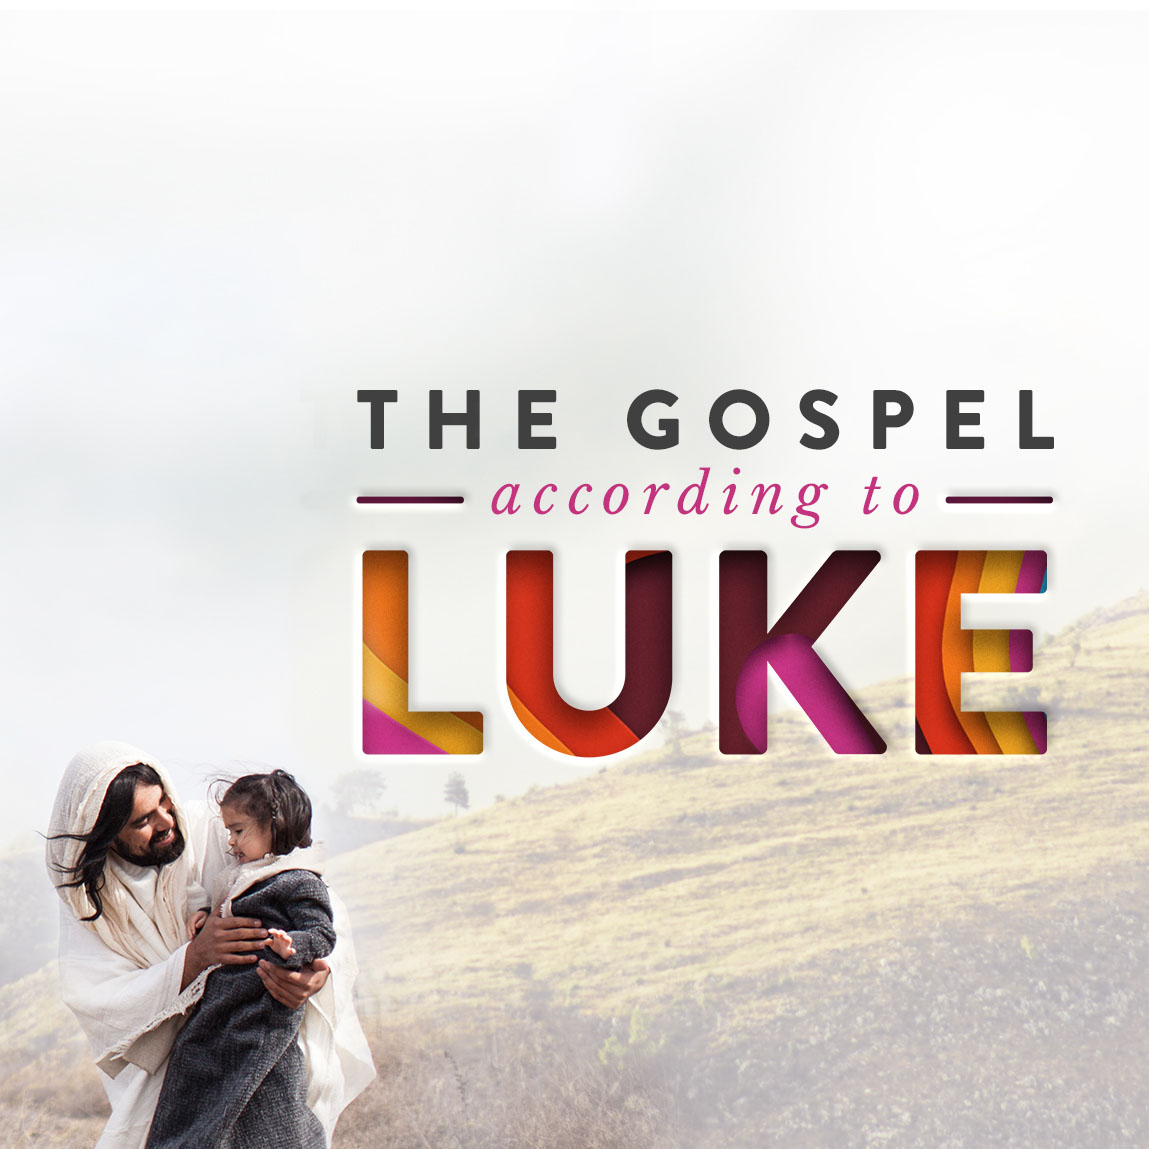  Luke 17:11-19